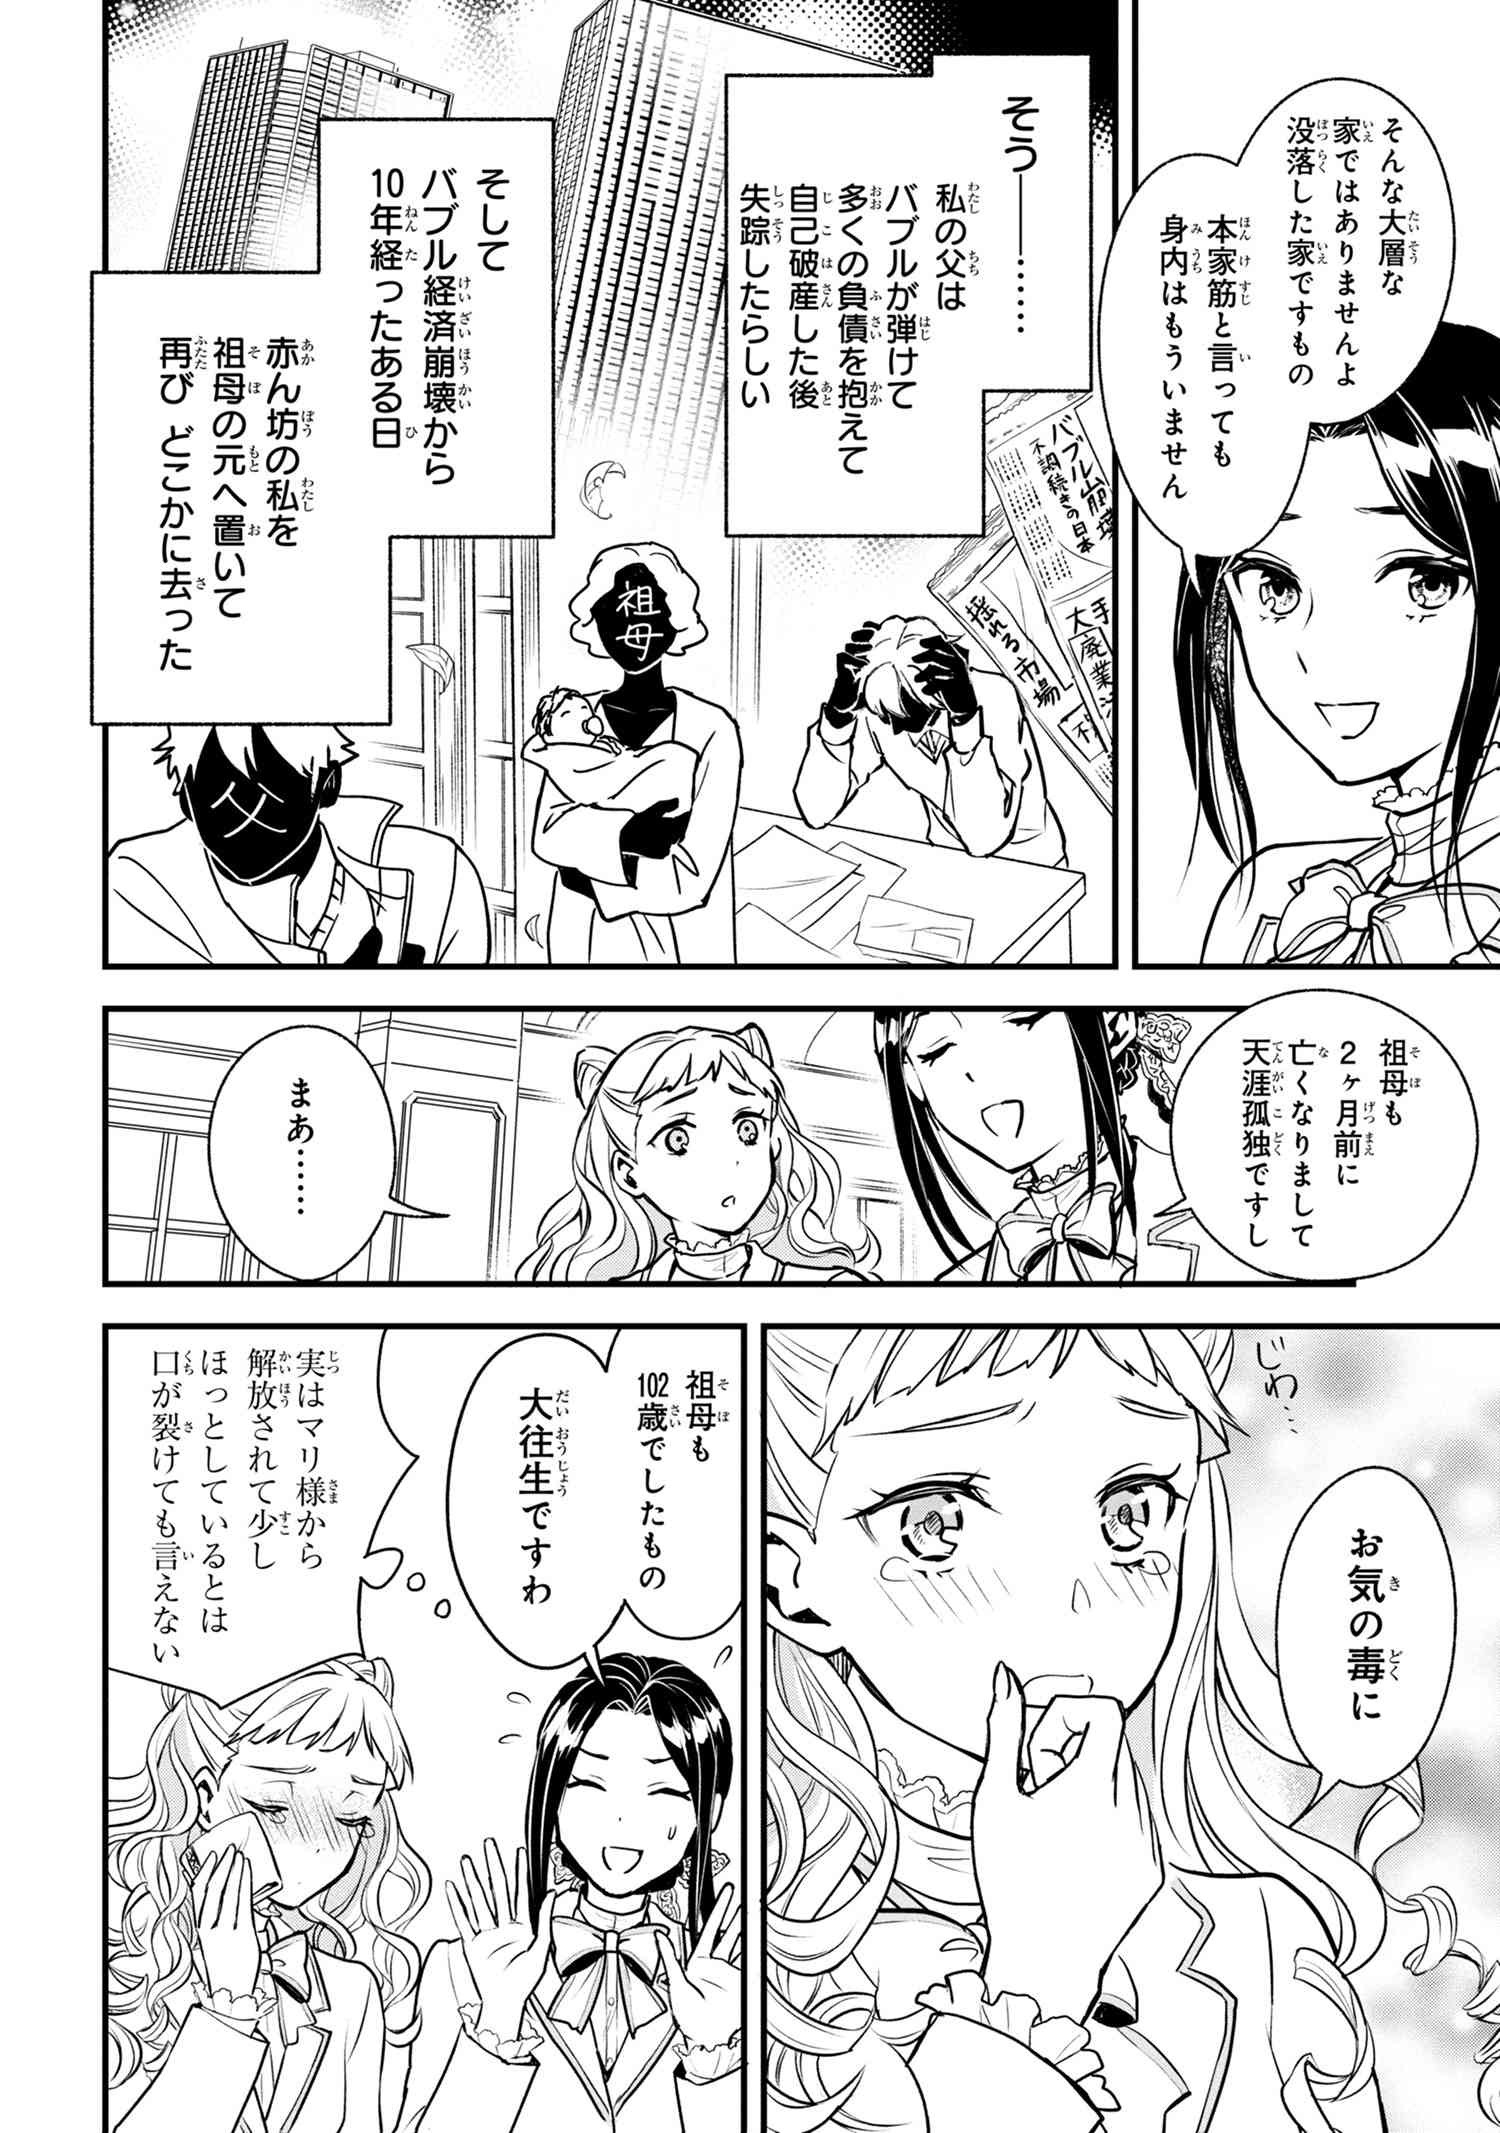 Reiko no Fuugi Akuyaku Reijou to Yobarete imasu ga, tada no Binbou Musume desu - Chapter 1-2 - Page 2